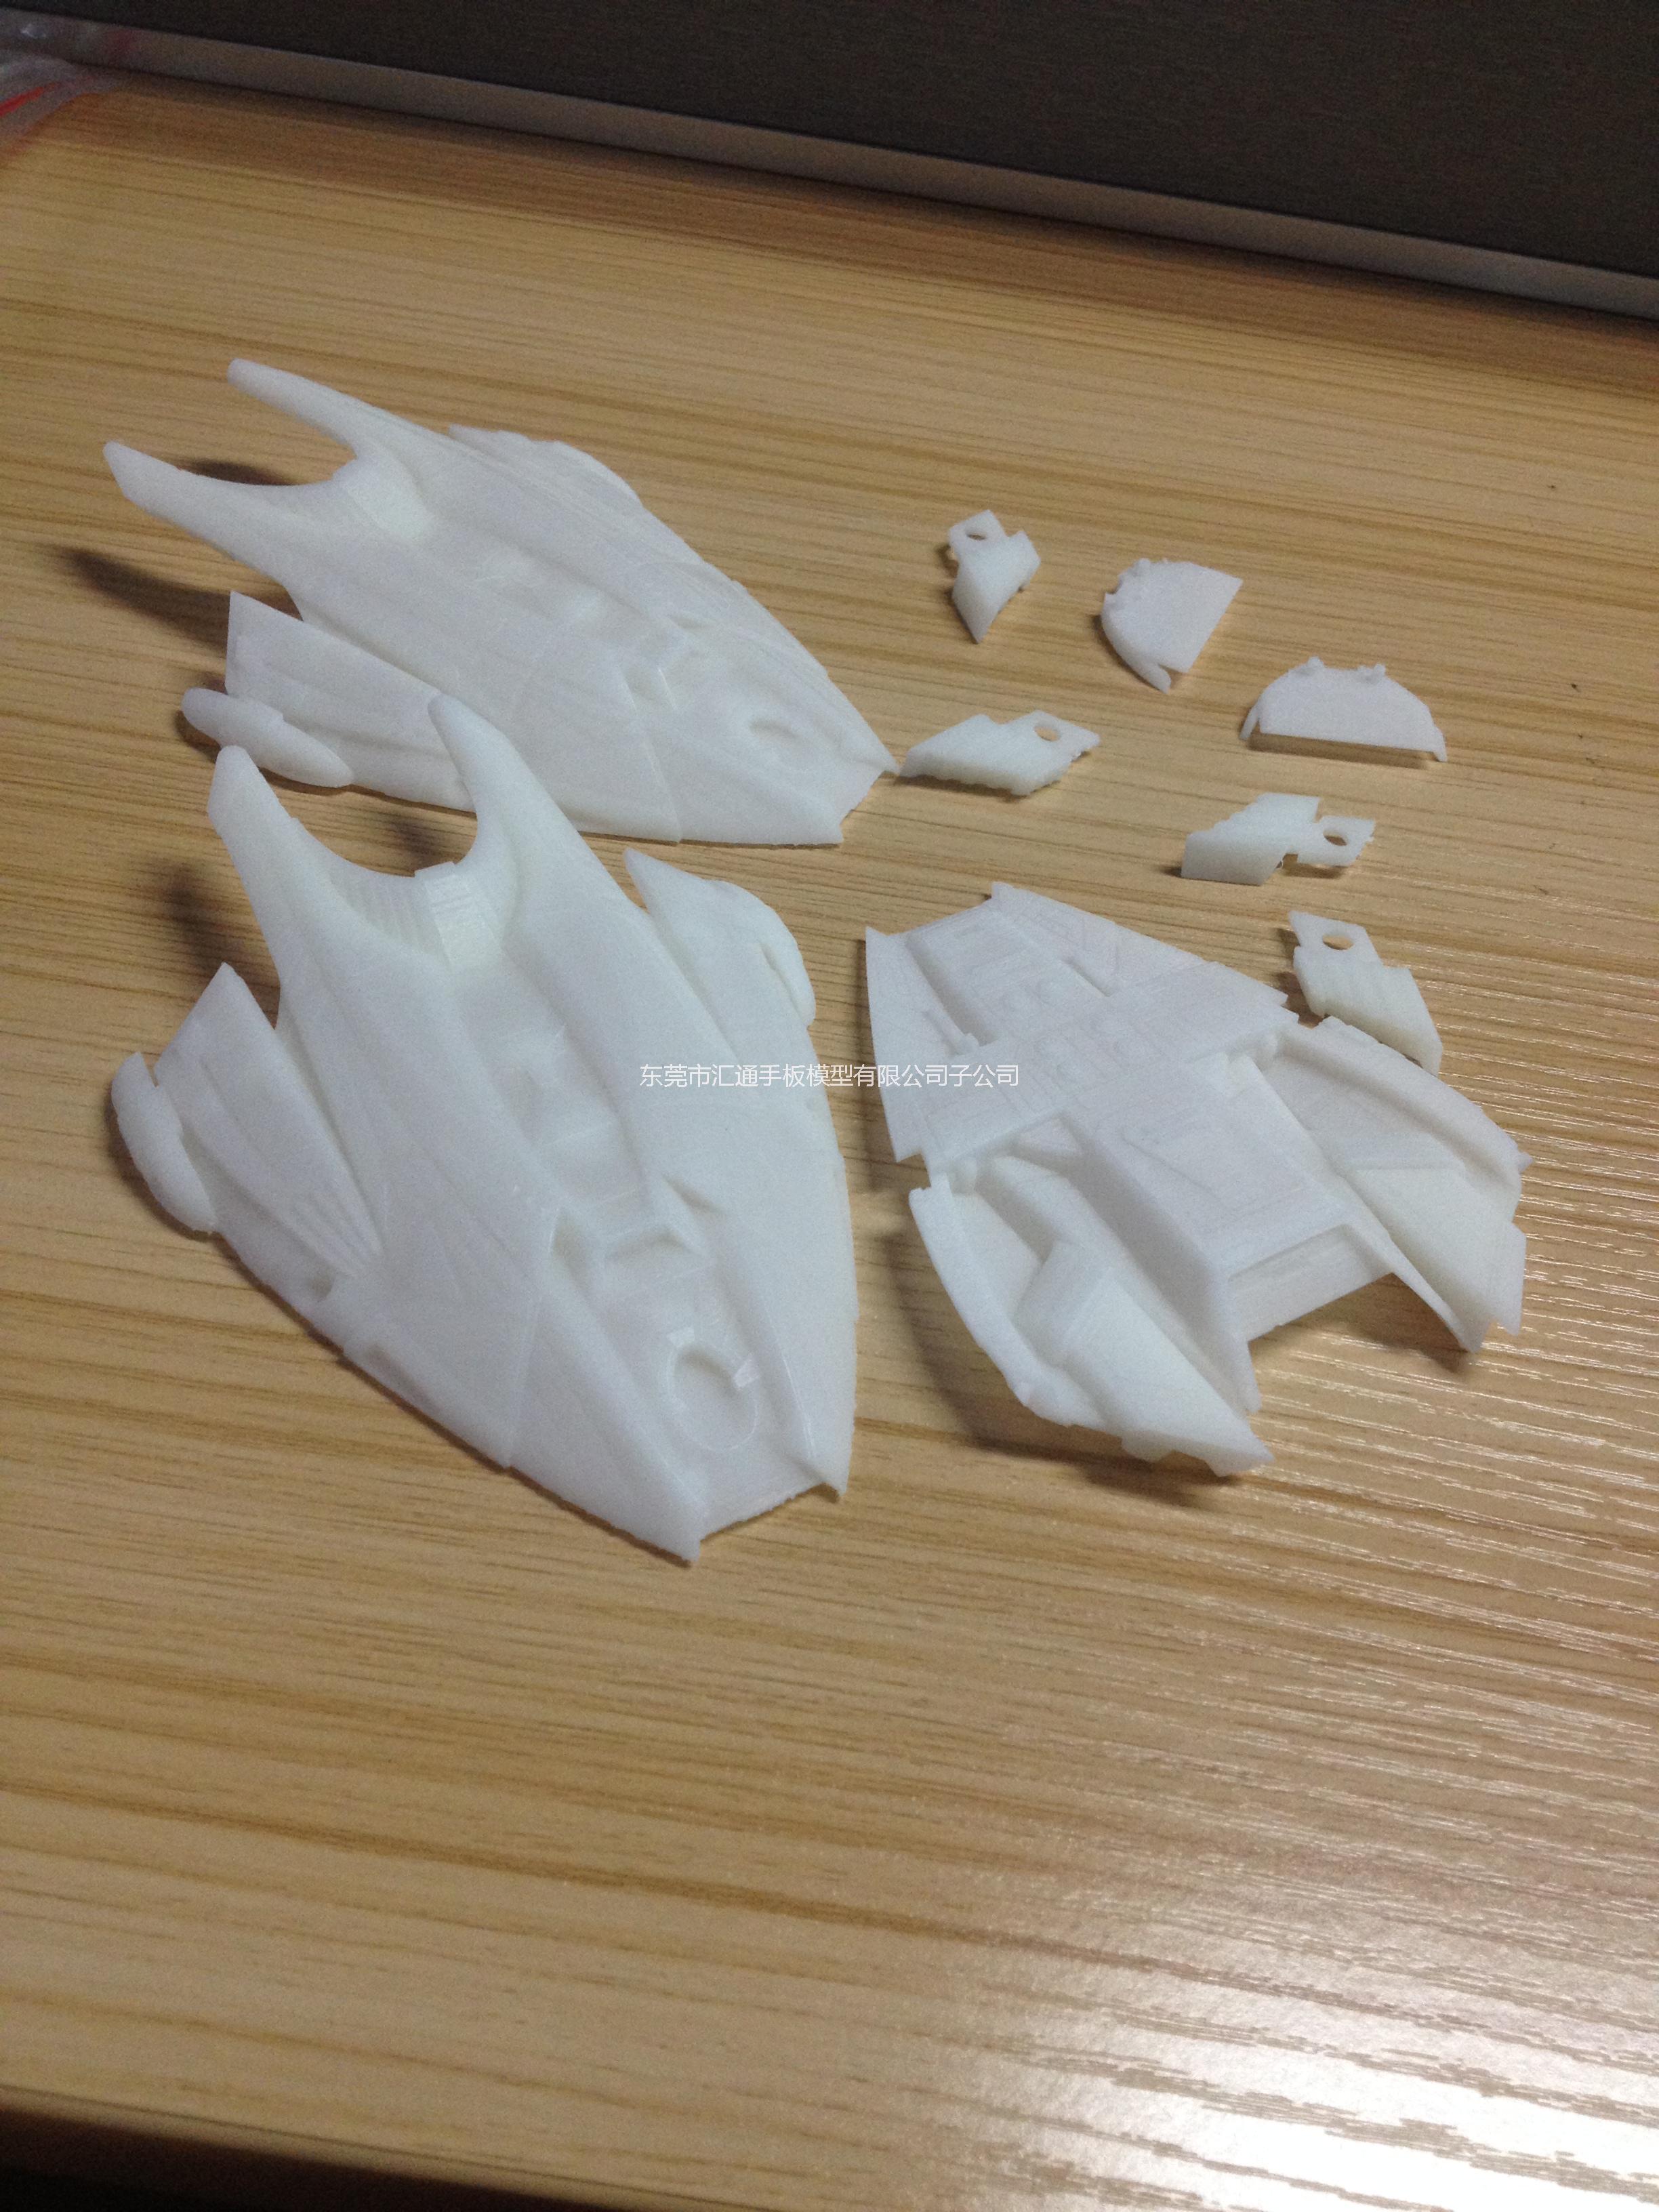 供应3D打印手板玩具飞碟/激光快速成型/手板制作/手板加工/速度快/精度高/价格低图片